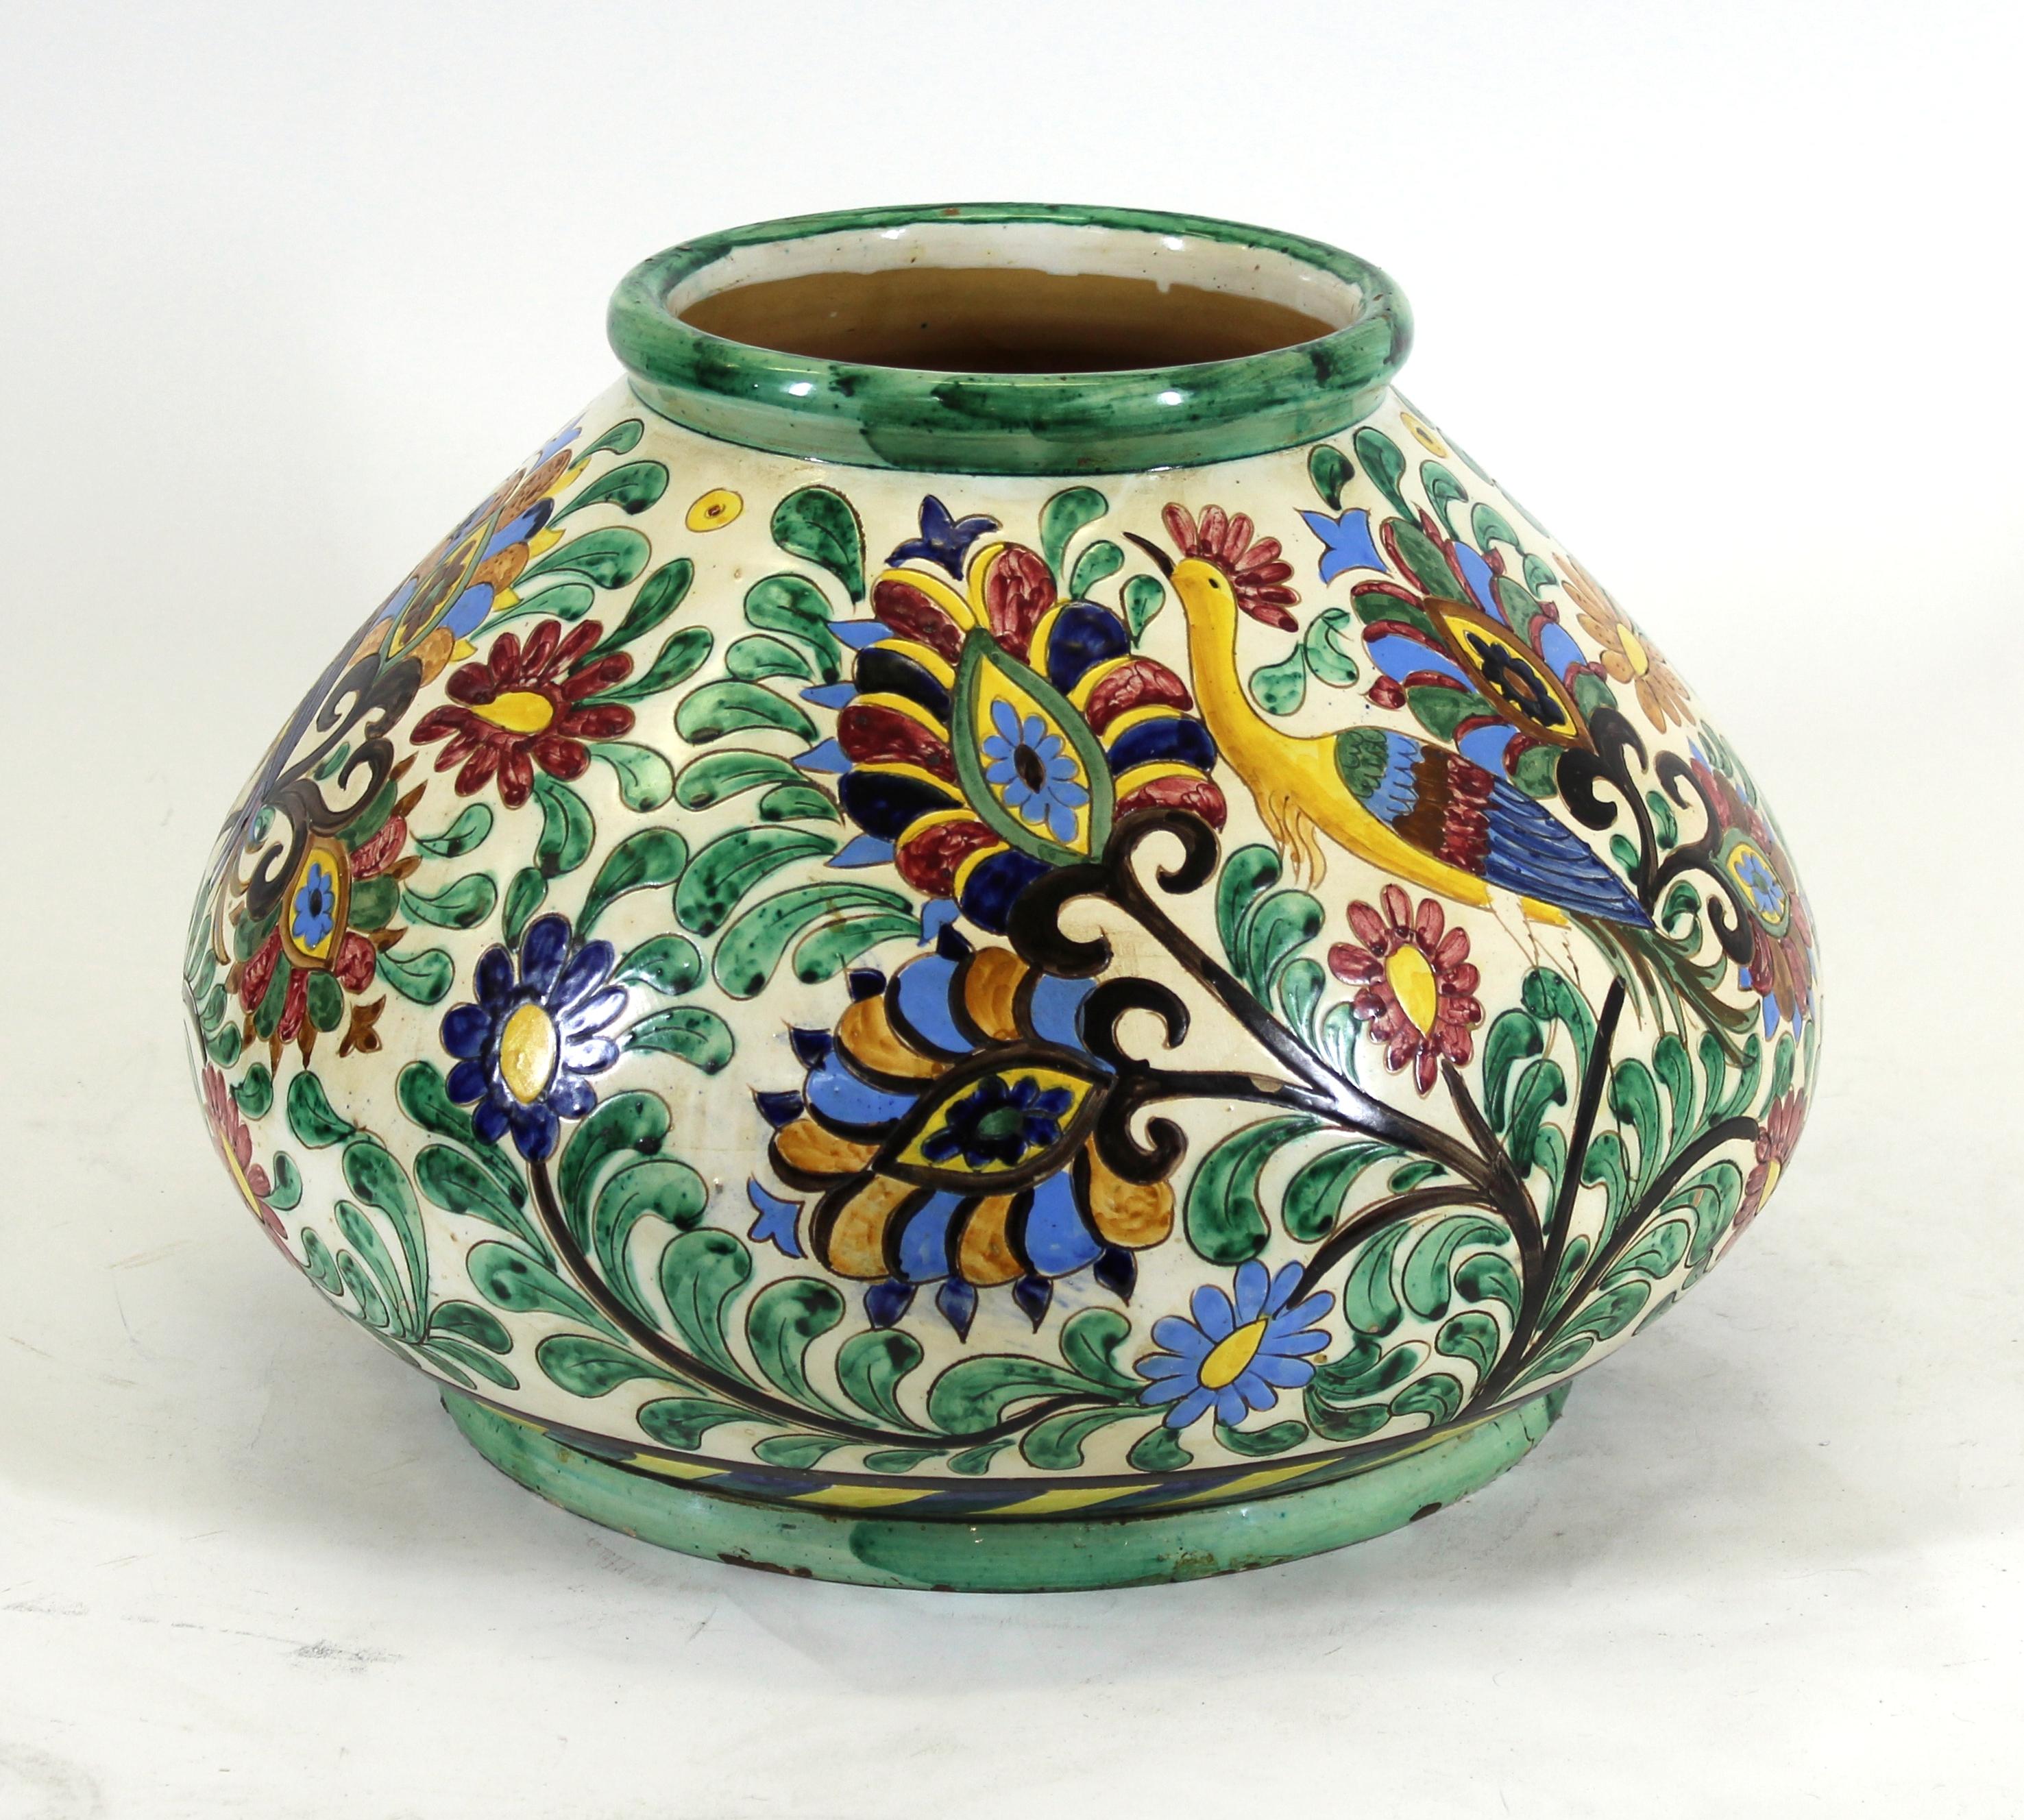 Italienische Renaissance Revival großen Majolika Tafelaufsatz Vase mit gemalten sgrafitto der floralen Thema mit Paradiesvögeln. Das Stück wurde in den 1910er Jahren in Italien hergestellt, ist auf dem Boden markiert und in einem bemerkenswerten